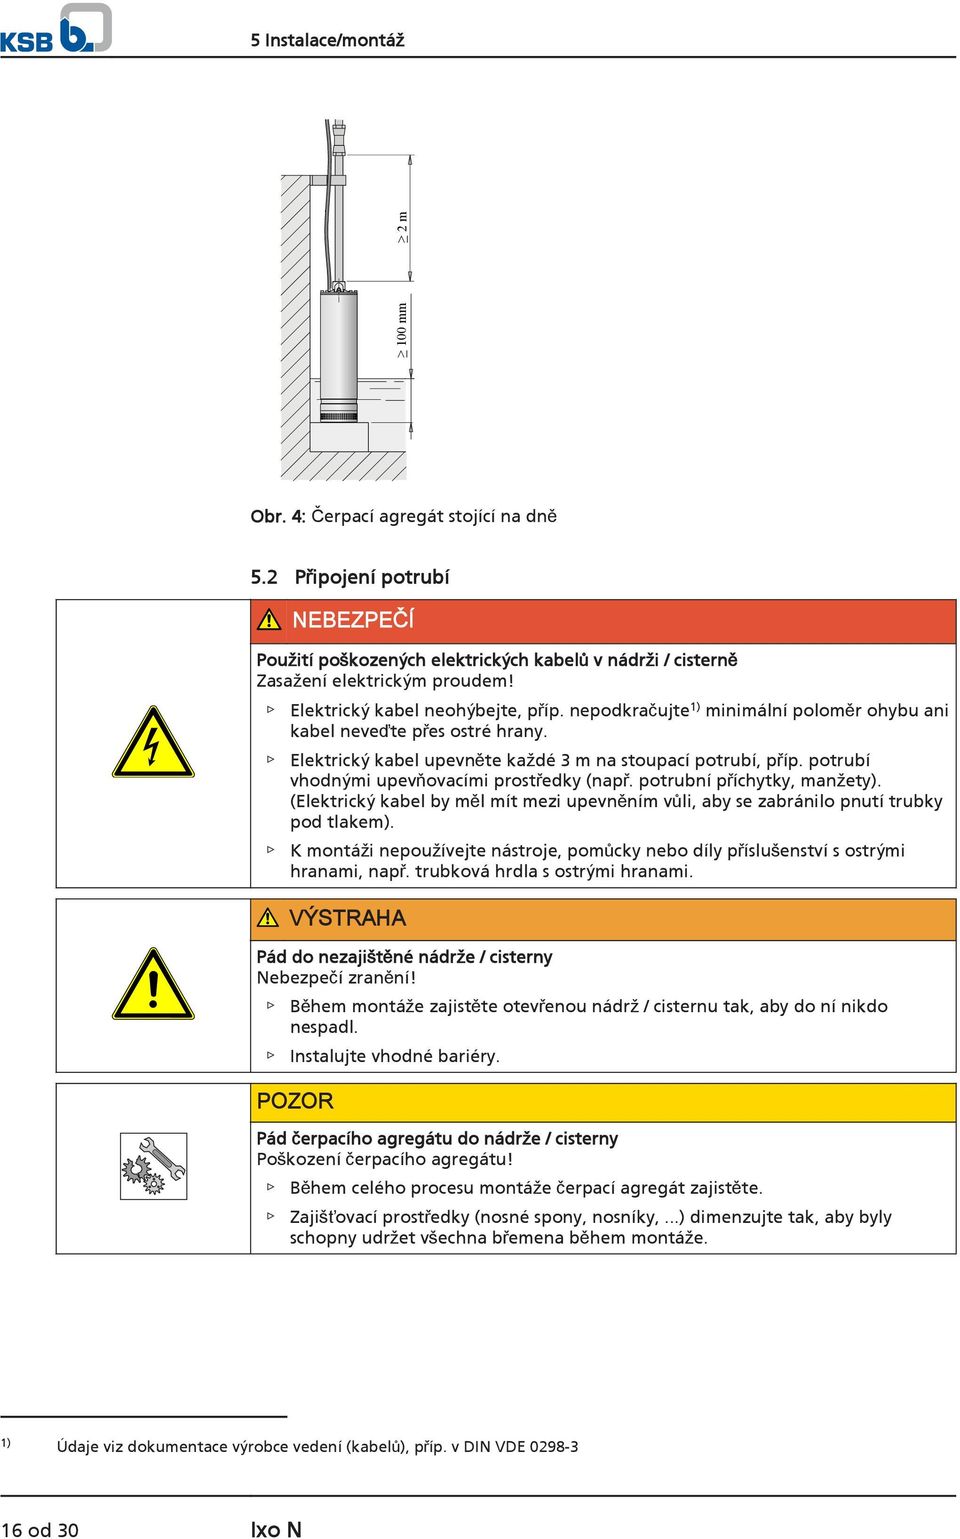 potrubí vhodnými upevňovacími prostředky (např. potrubní příchytky, manžety). (Elektrický kabel by měl mít mezi upevněním vůli, aby se zabránilo pnutí trubky pod tlakem).